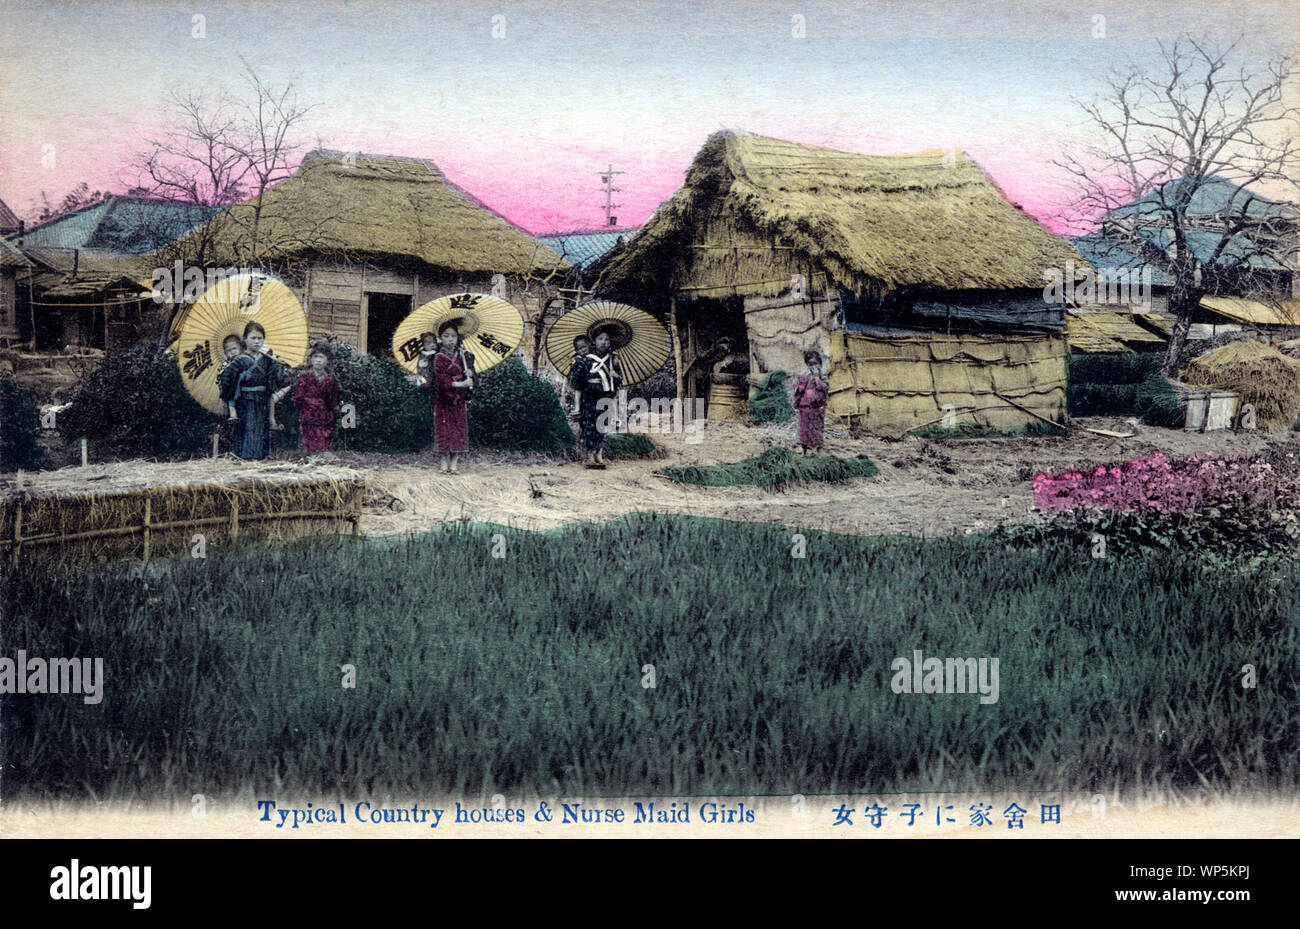 [ 1900 - Japon Enfant Nursemaids japonais et des bâtiments avec des toits de chaume ] - Komori en face de bâtiments ruraux, avec des toits de chaume. Komori étaient de jeunes filles de familles pauvres qui ont été engagés par l'année d'aider les mères de classe moyenne et supérieure dans le soin de leur enfant. En plus d'effectuer le bébé autour, la komori pourrait aussi aider un peu avec les travaux ménagers. Komori a reçu de la nourriture, le logement, les vêtements, et parfois un peu d'argent. 20e siècle vintage carte postale. Banque D'Images